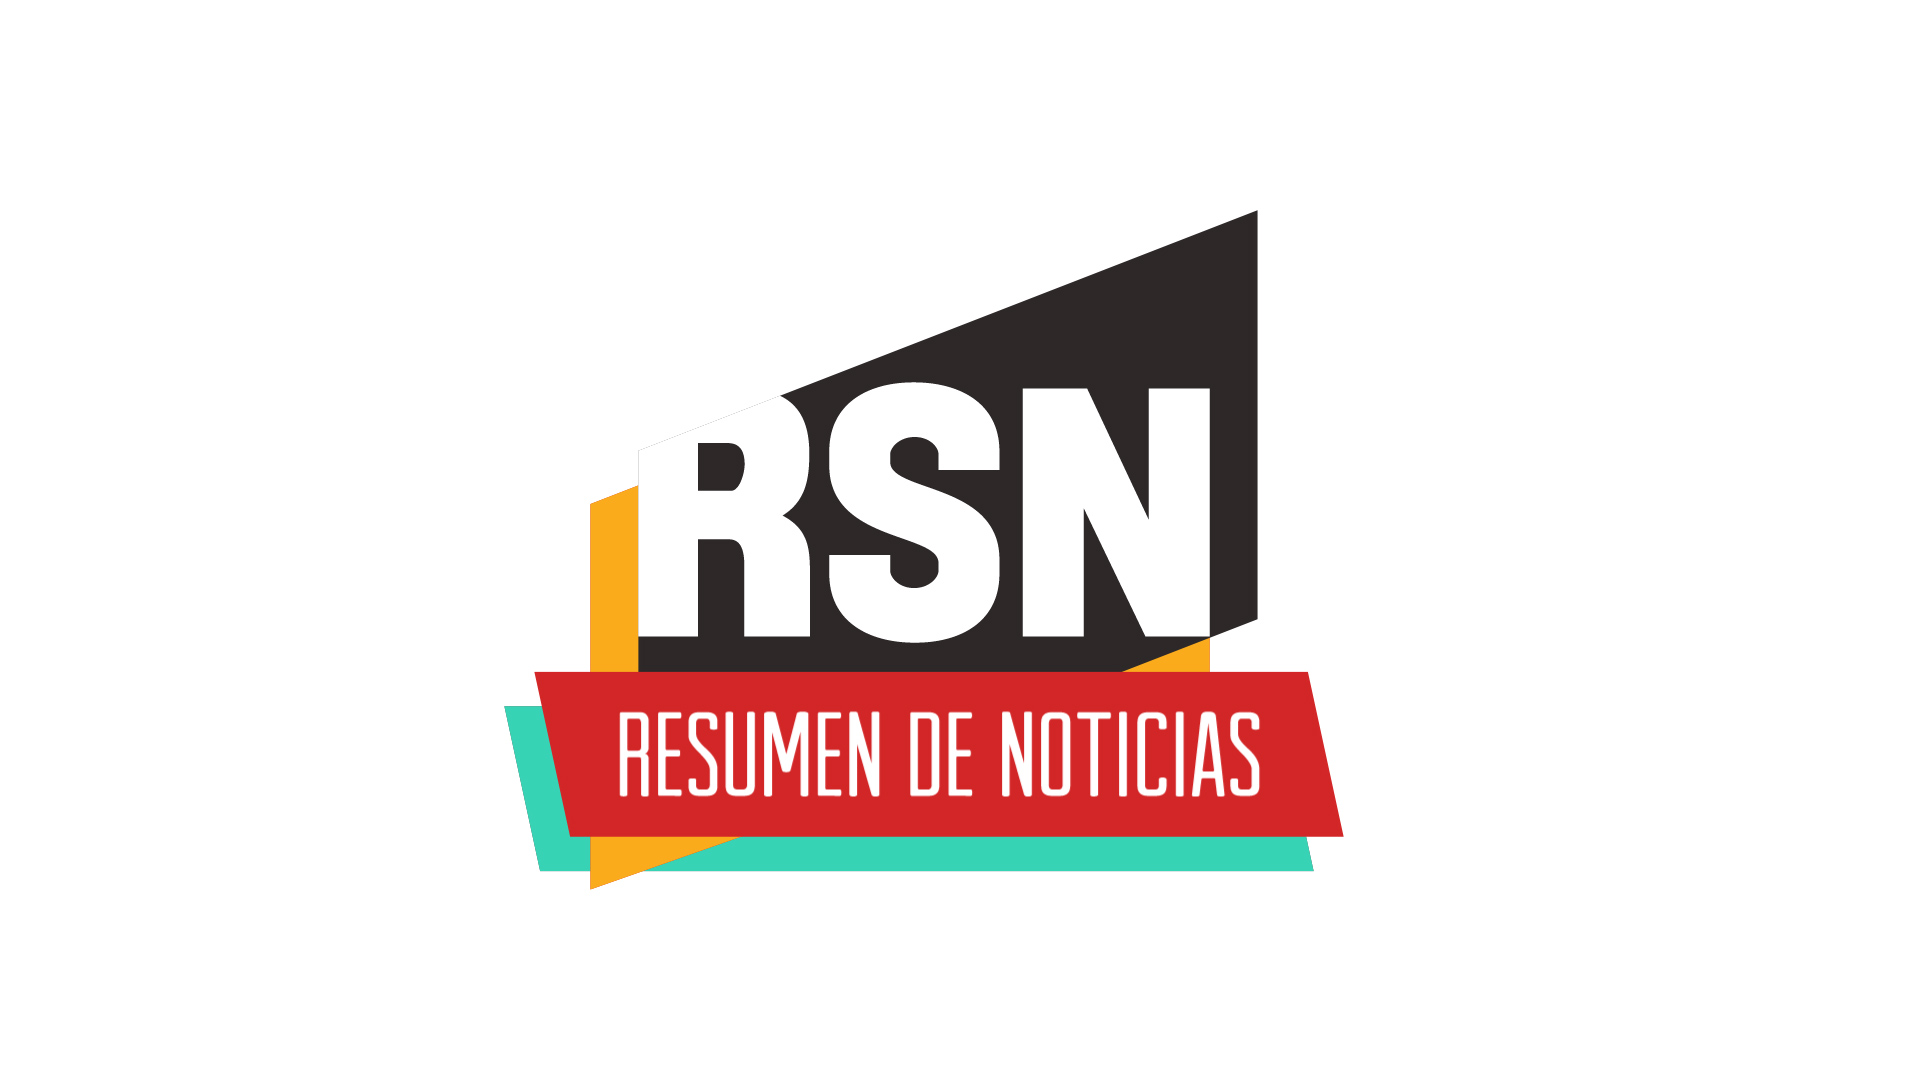 RSN Resúmen de Noticias